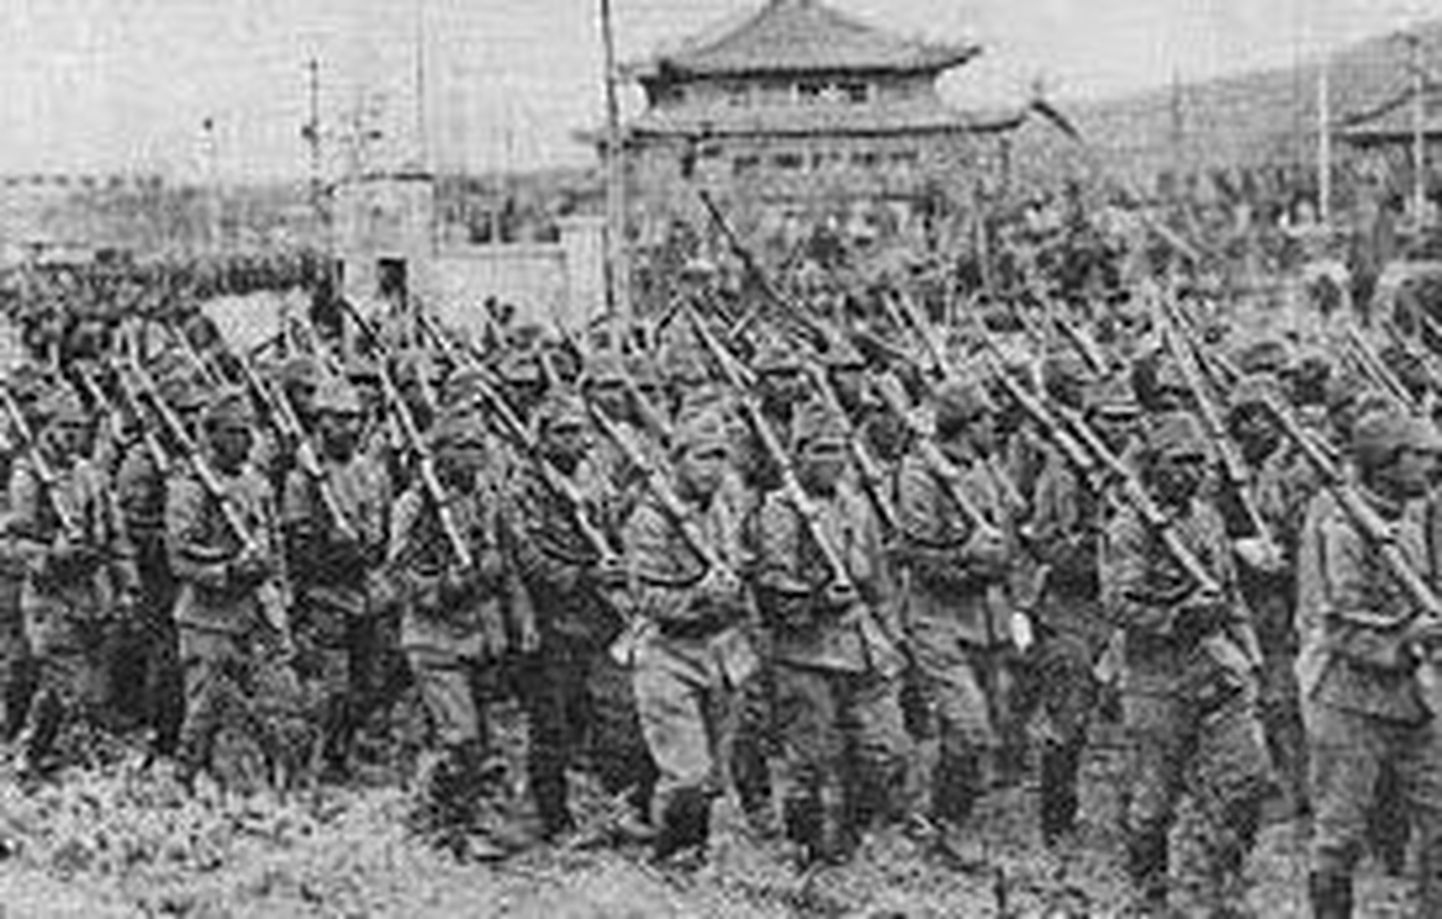 Hiina sõdurid 1939. aastal